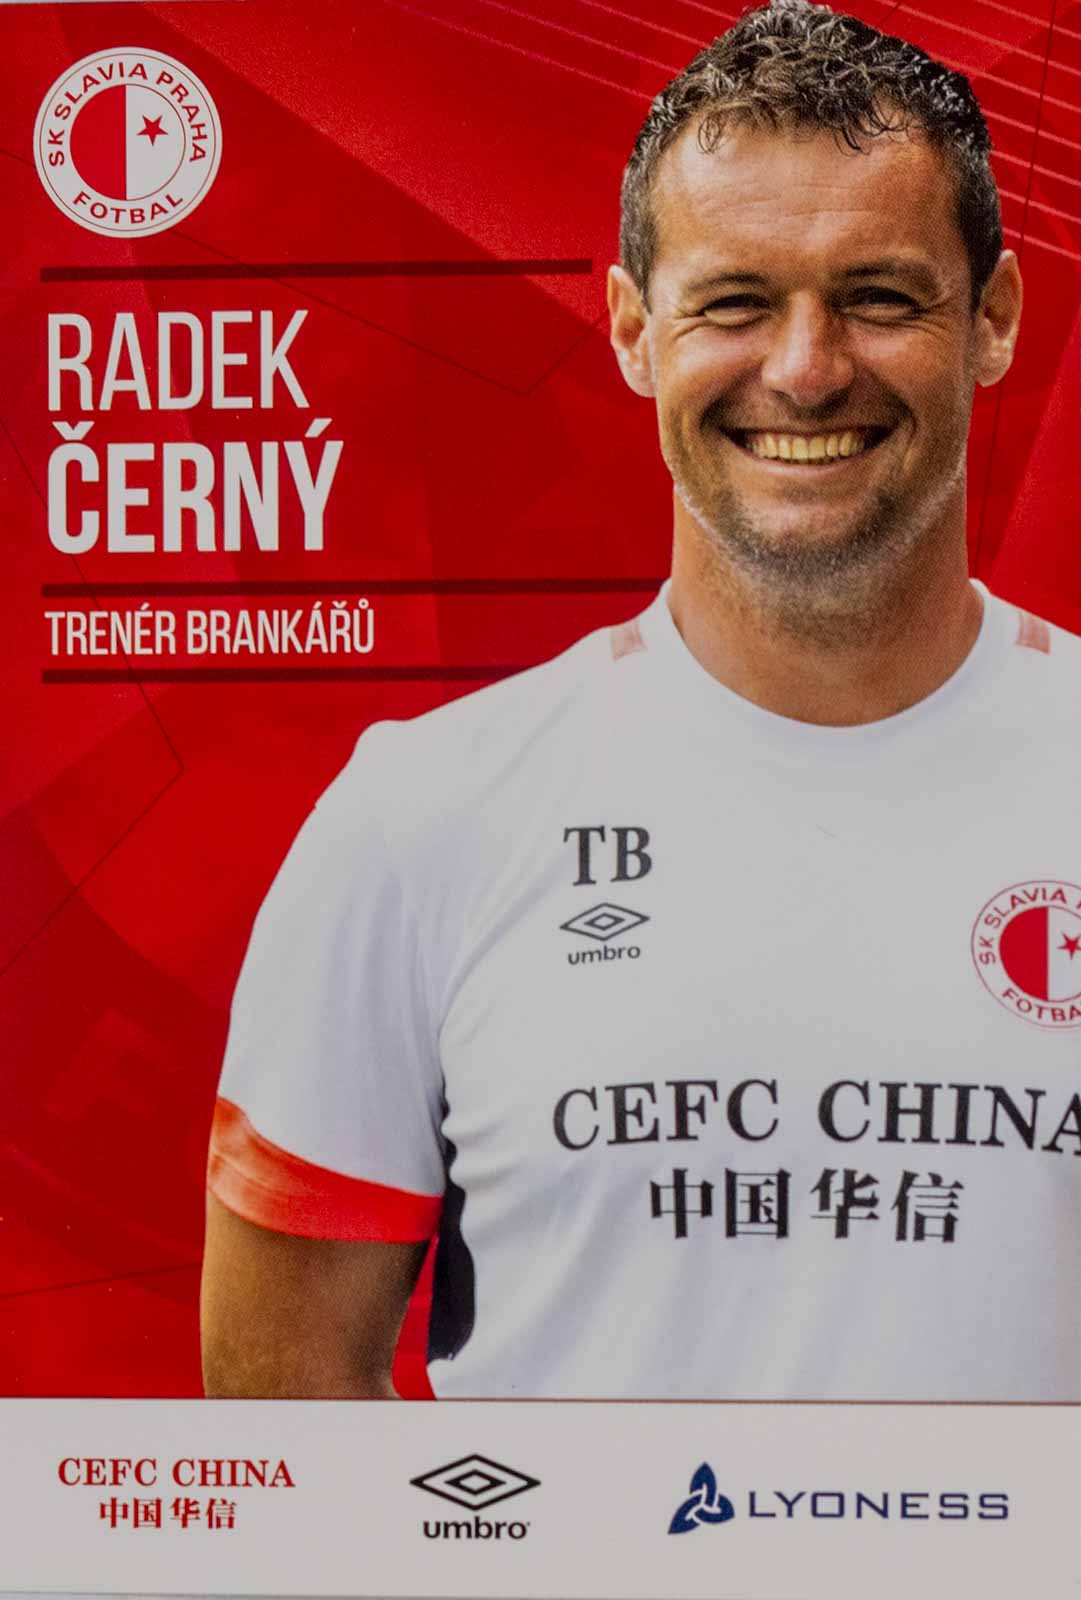 Podpisová karta, Radek Černý, SK Slavia Praha